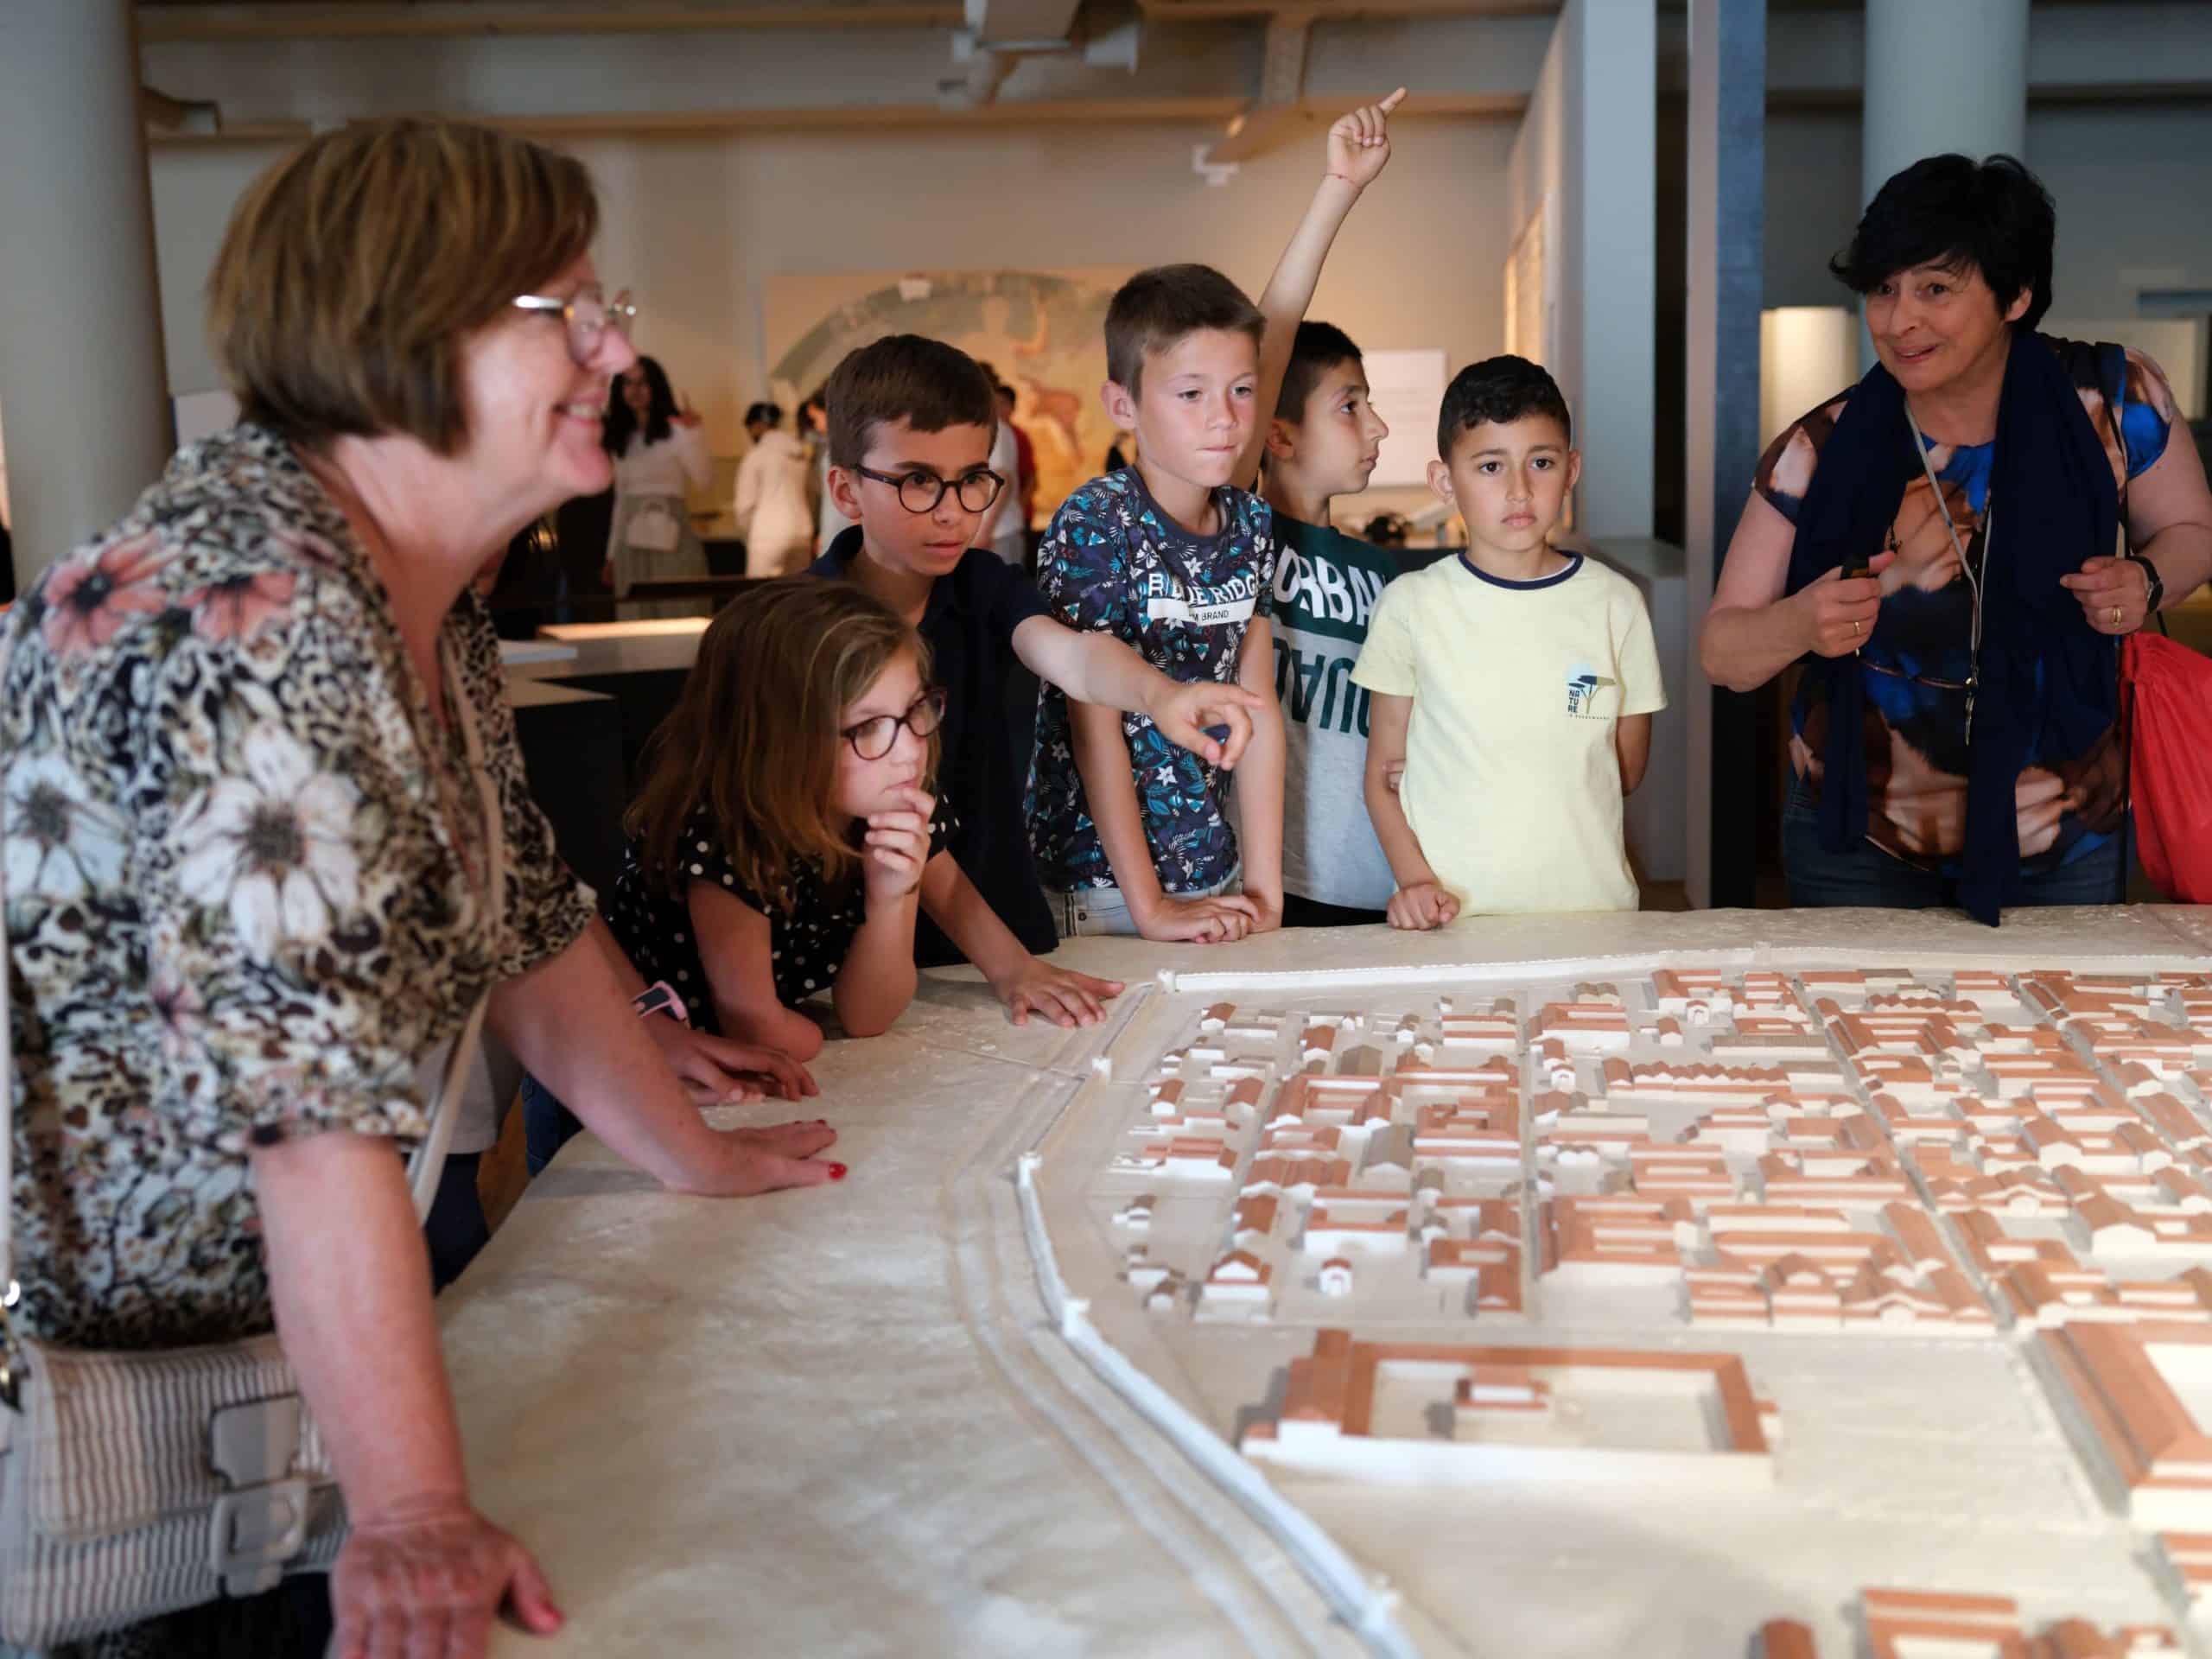 Leerlingen tijdens het schoolprogramma 'Ten aanval' in het Gallo-Romeins Museum